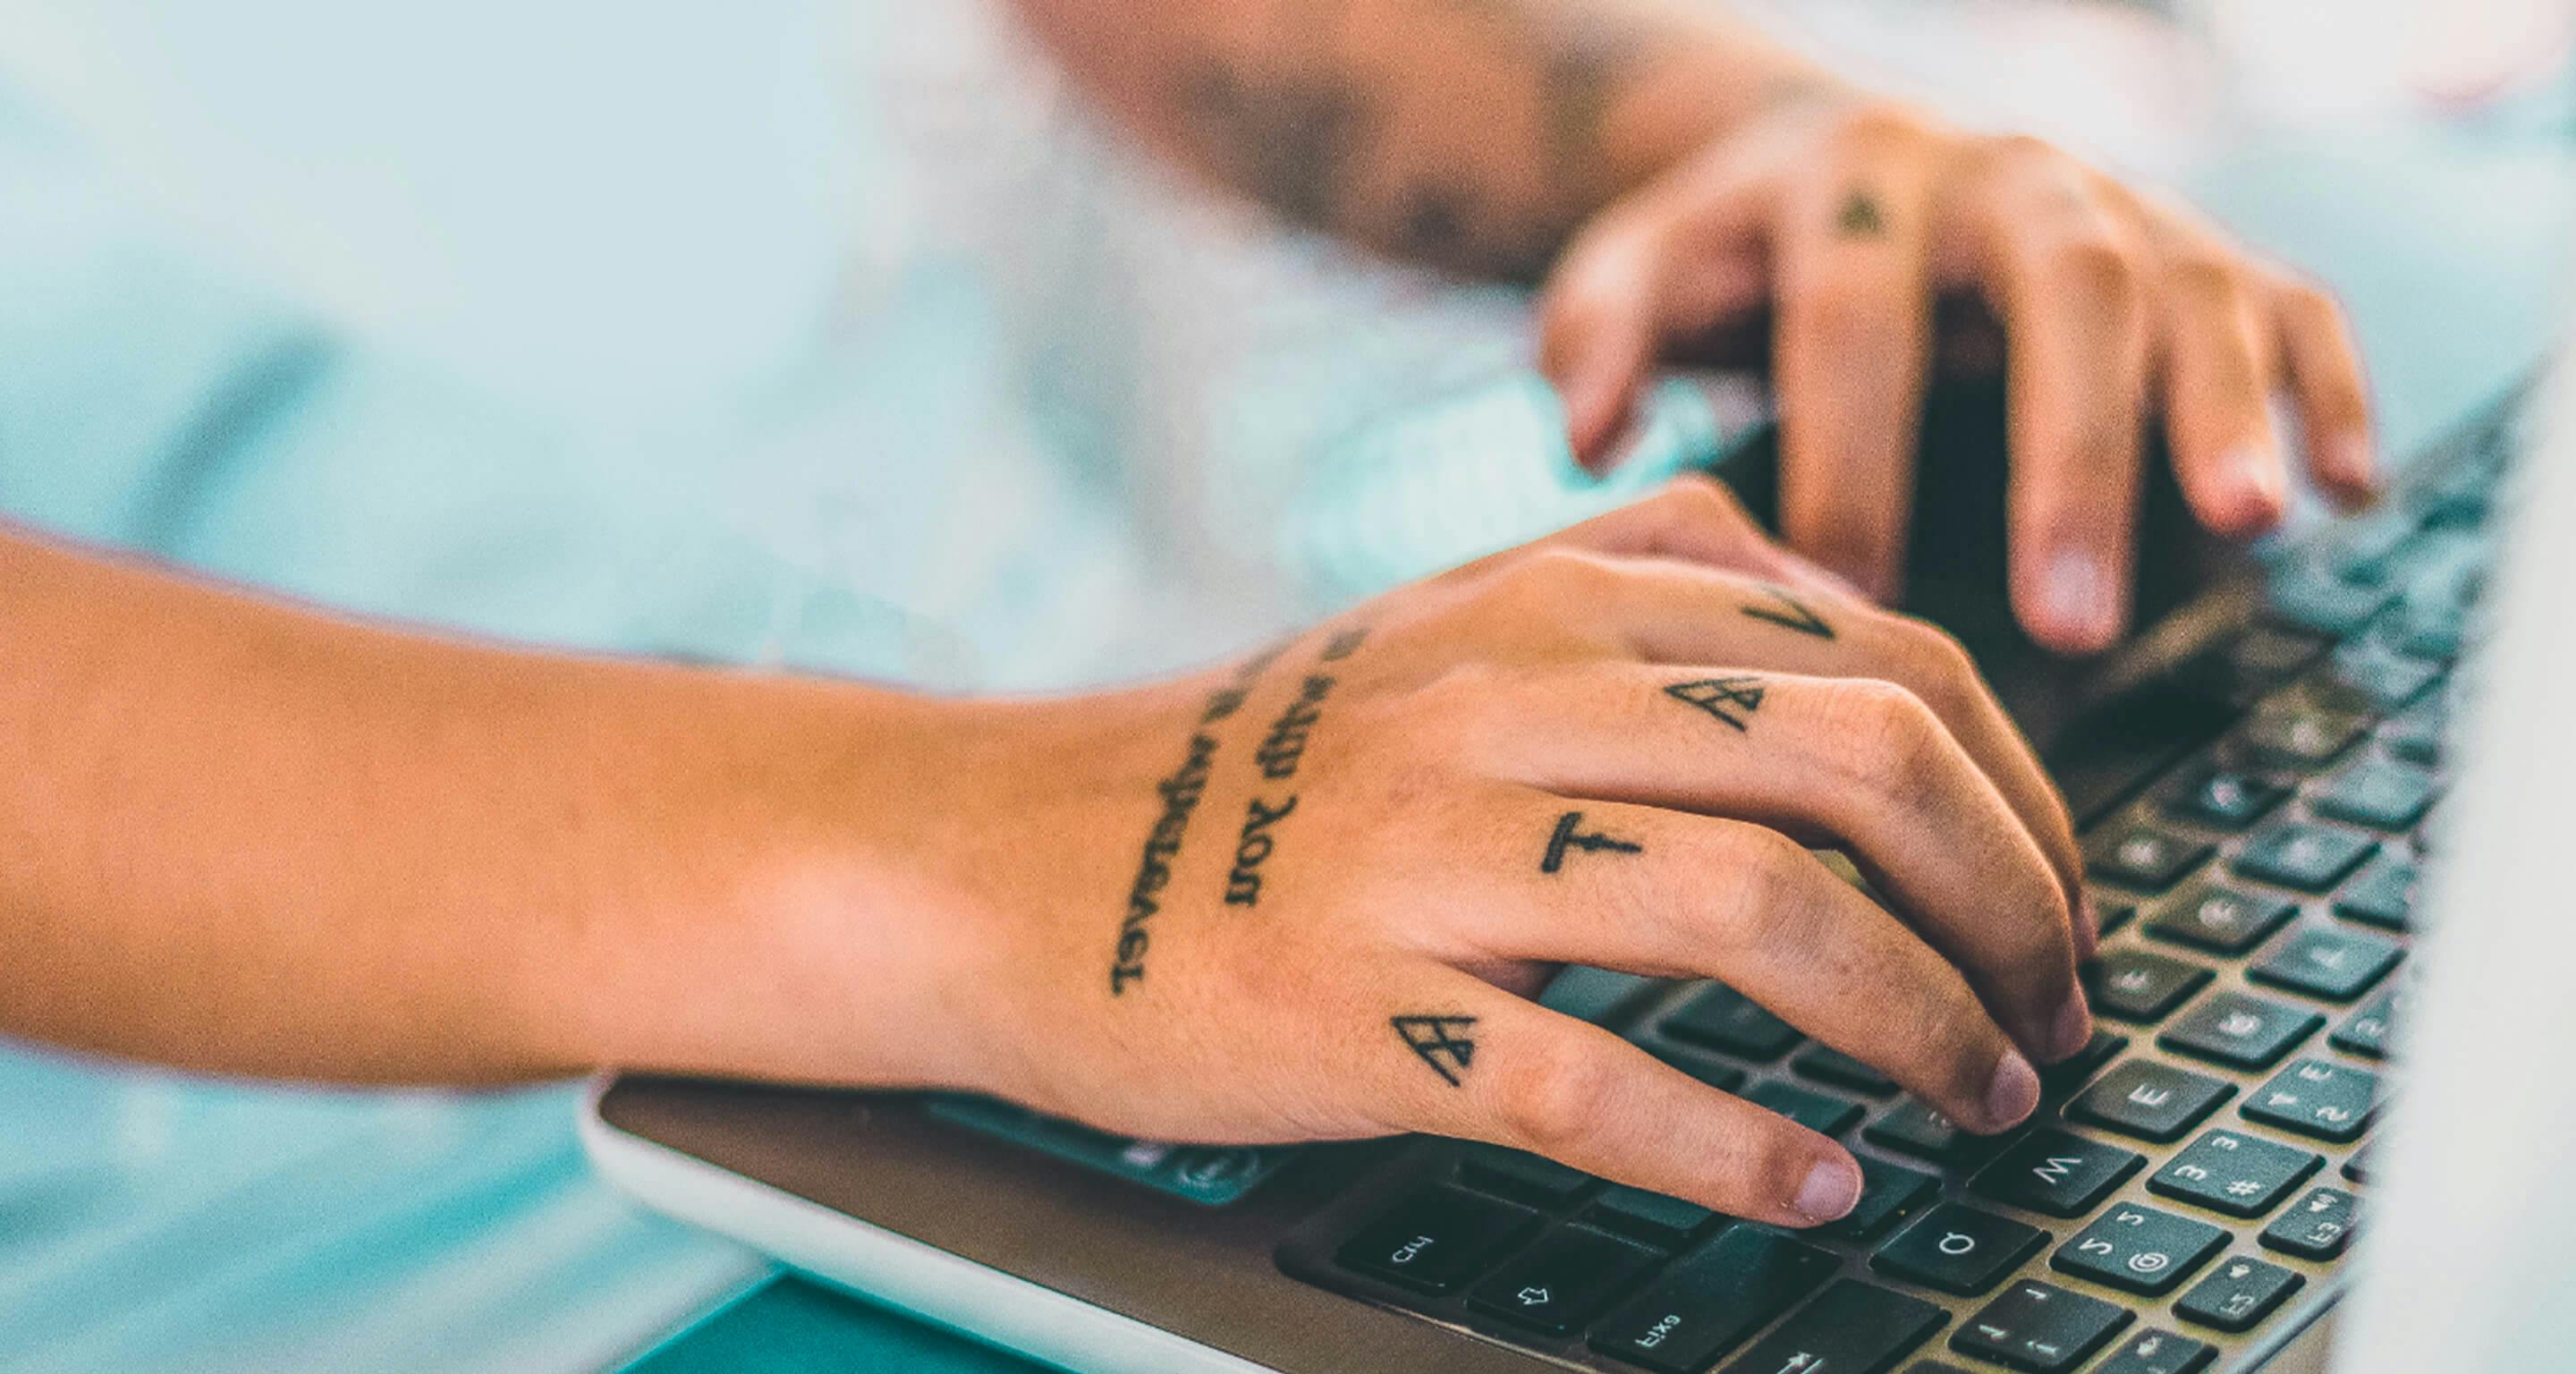 Mãos tatuadas digitando em um teclado de computador